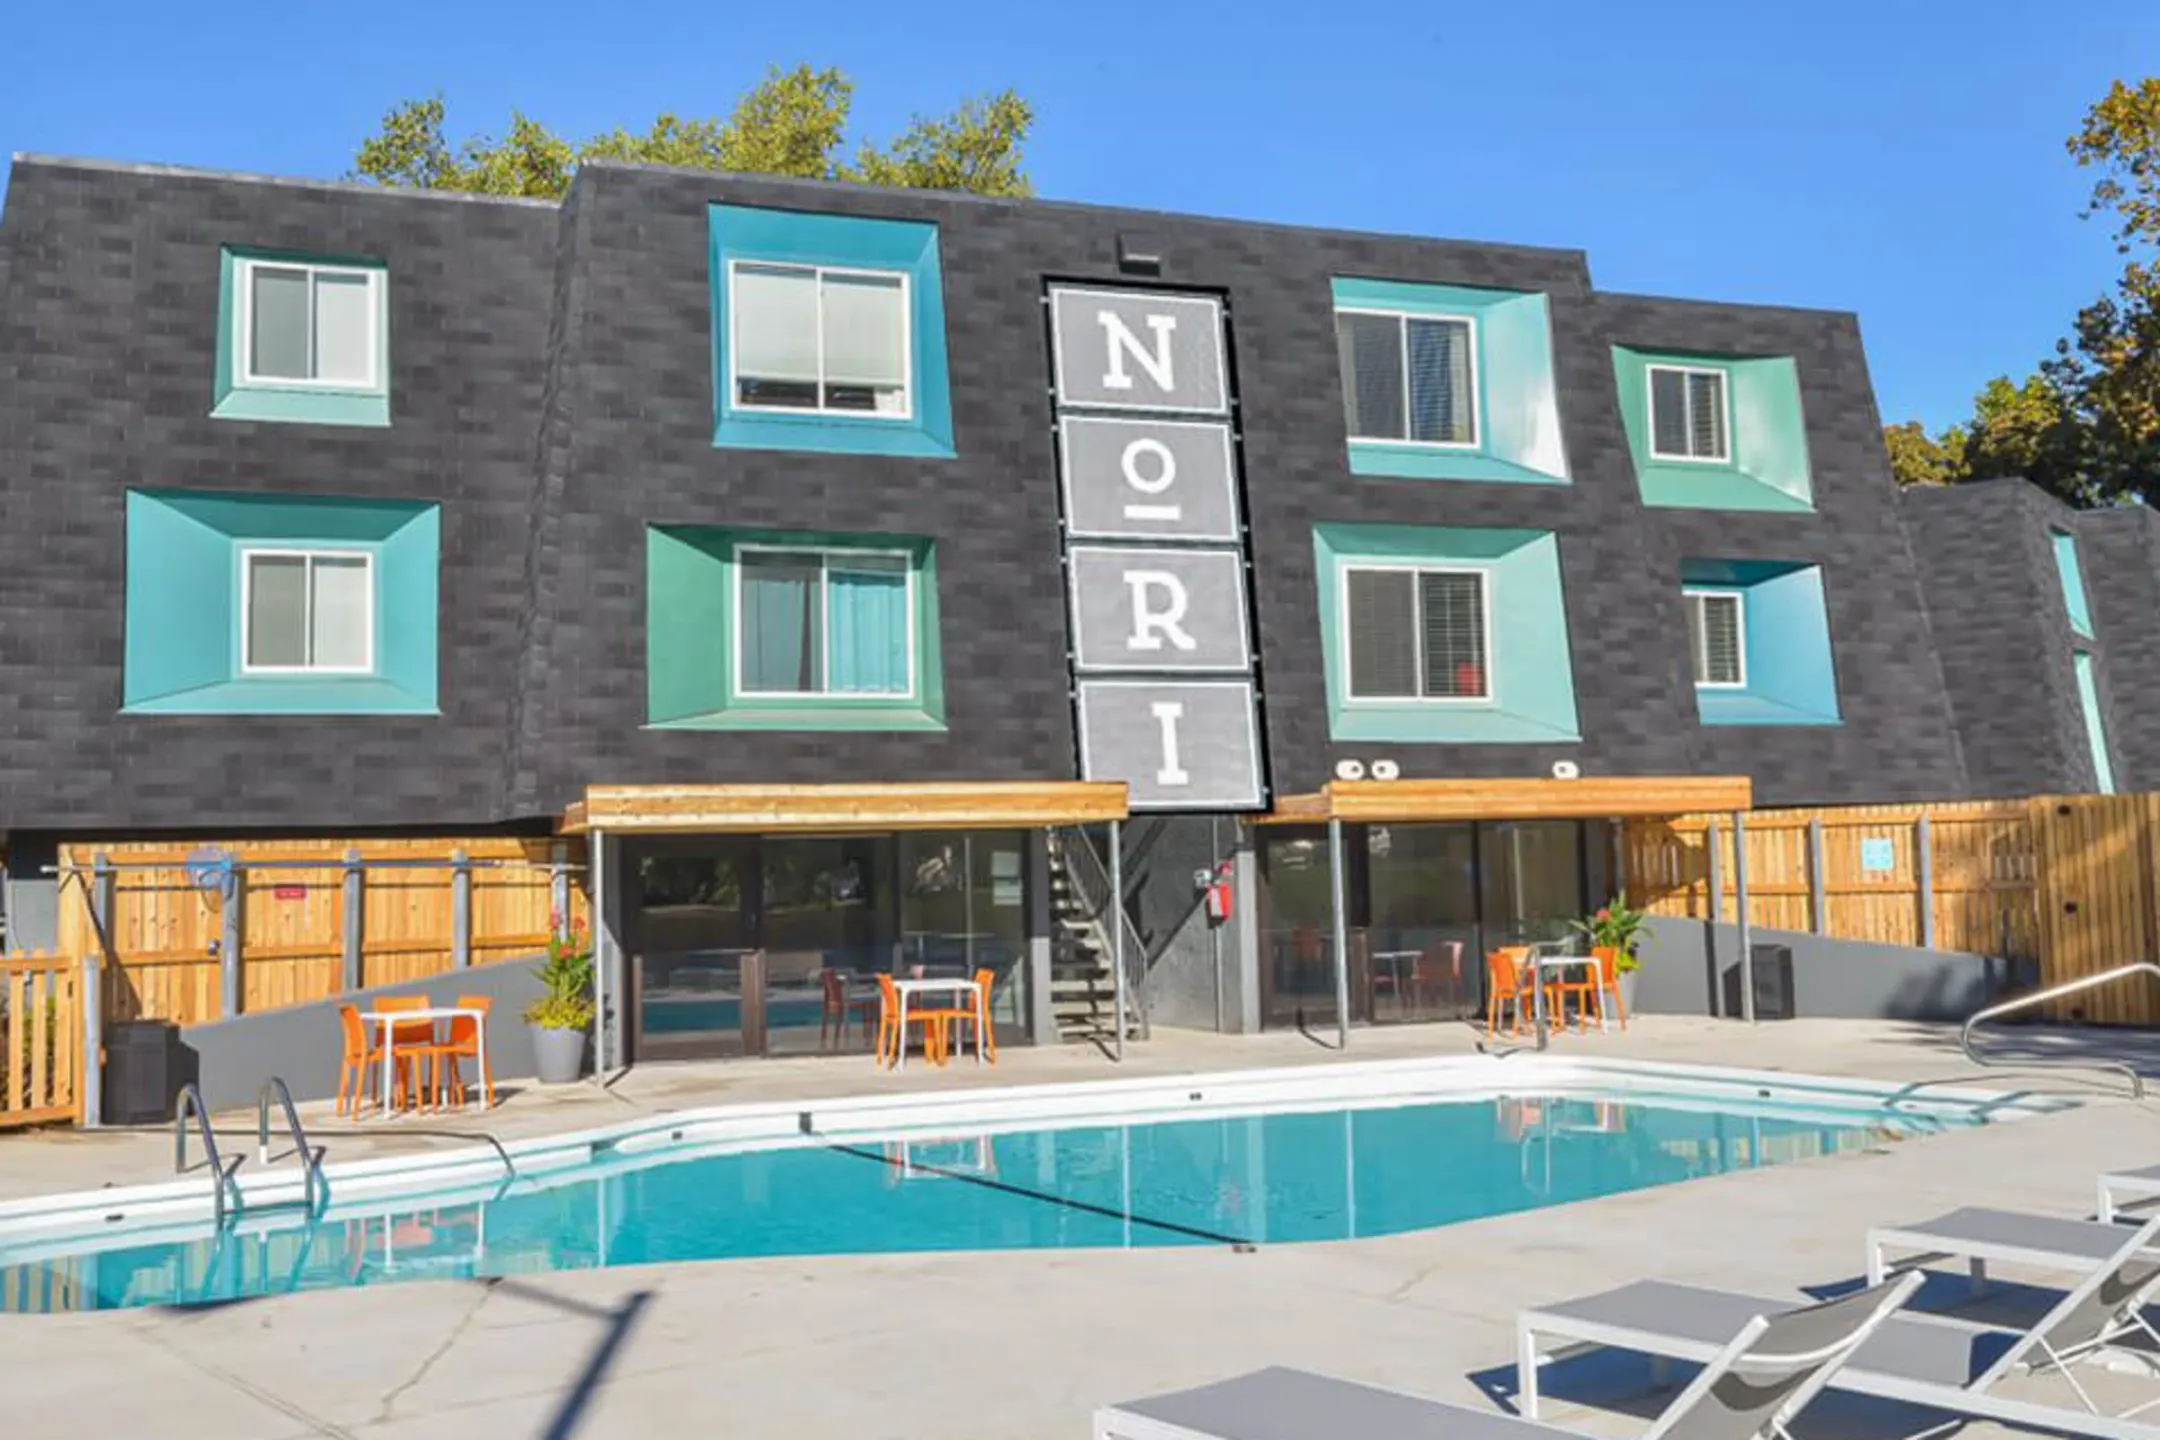 Pool - Nori Apartments - Kansas City, MO